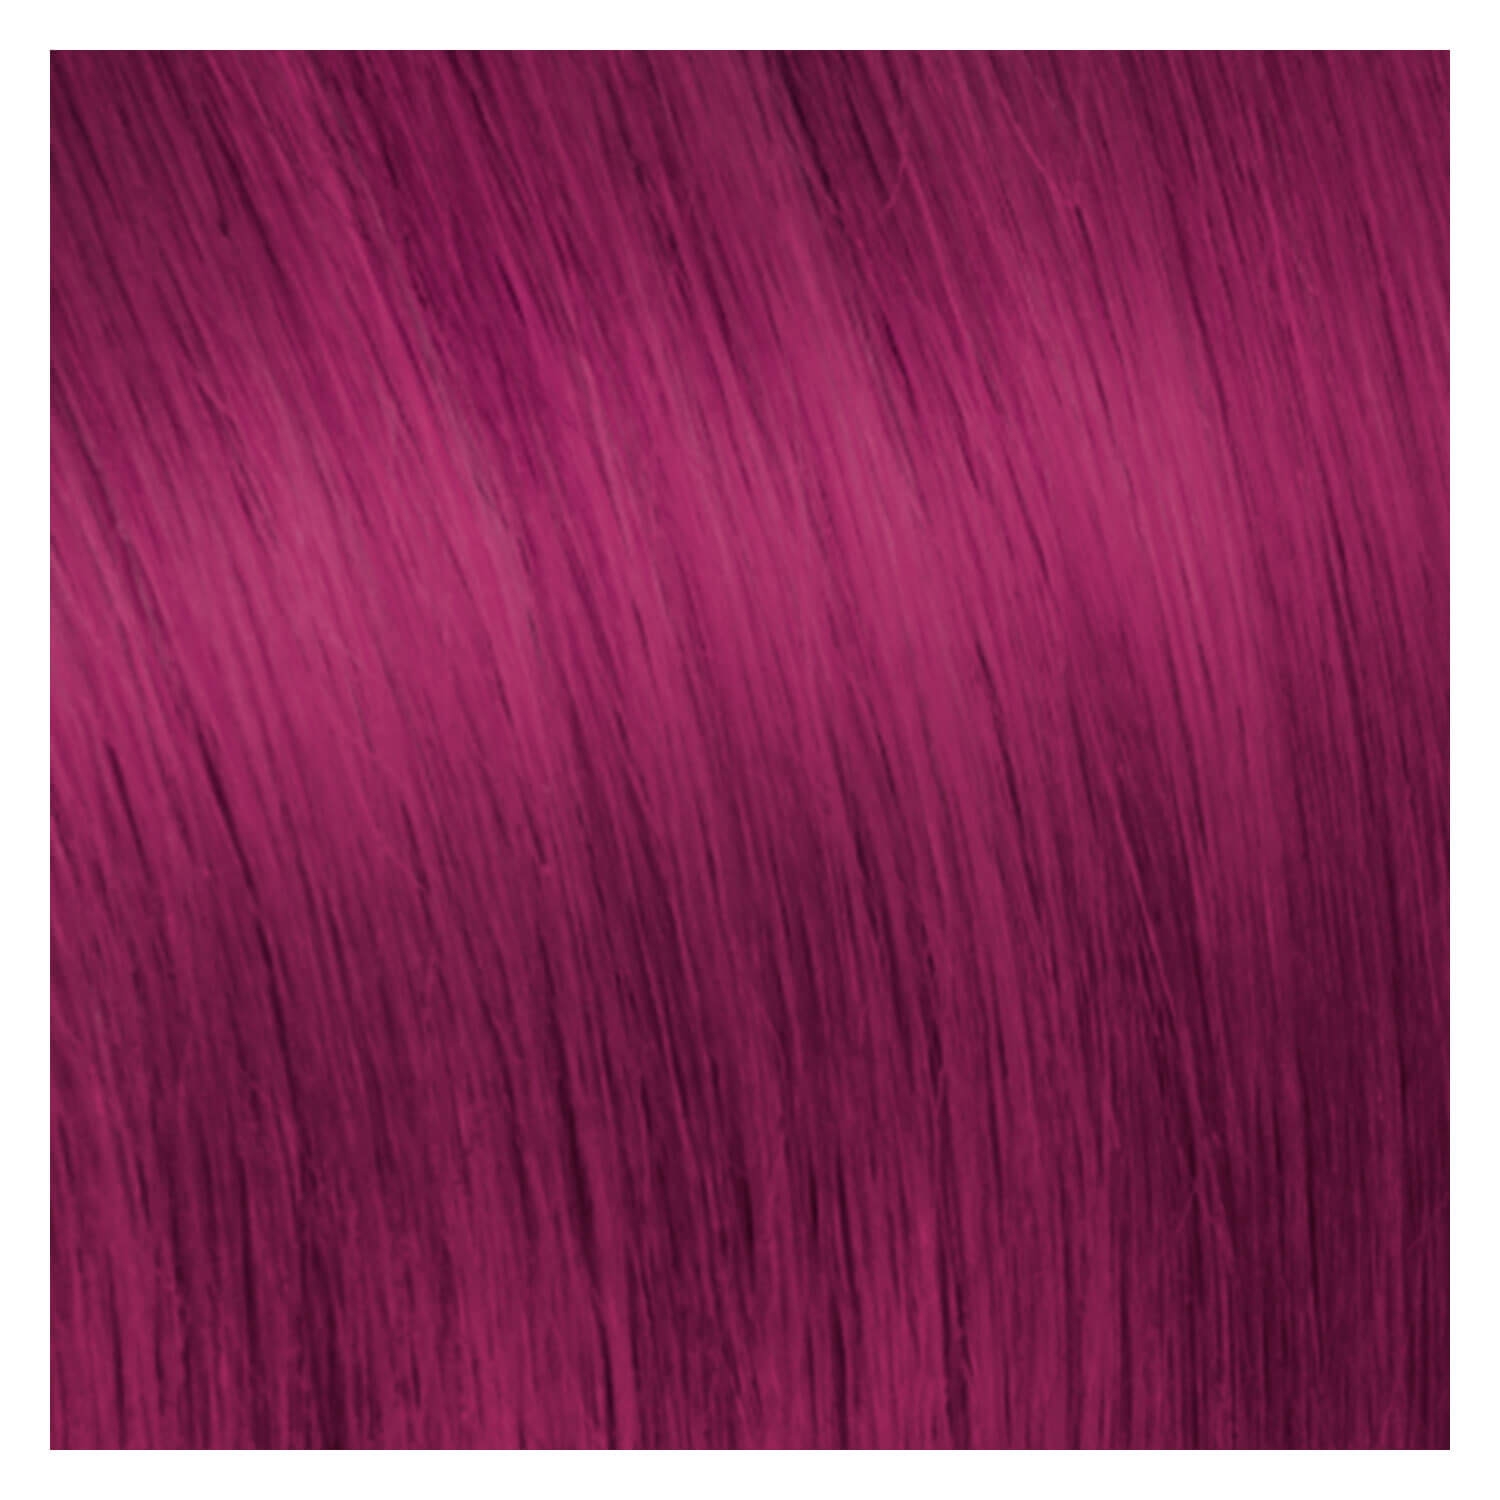 Produktbild von SHE Tape In-System Hair Extensions Straight - Rötlich Violett 55/60cm